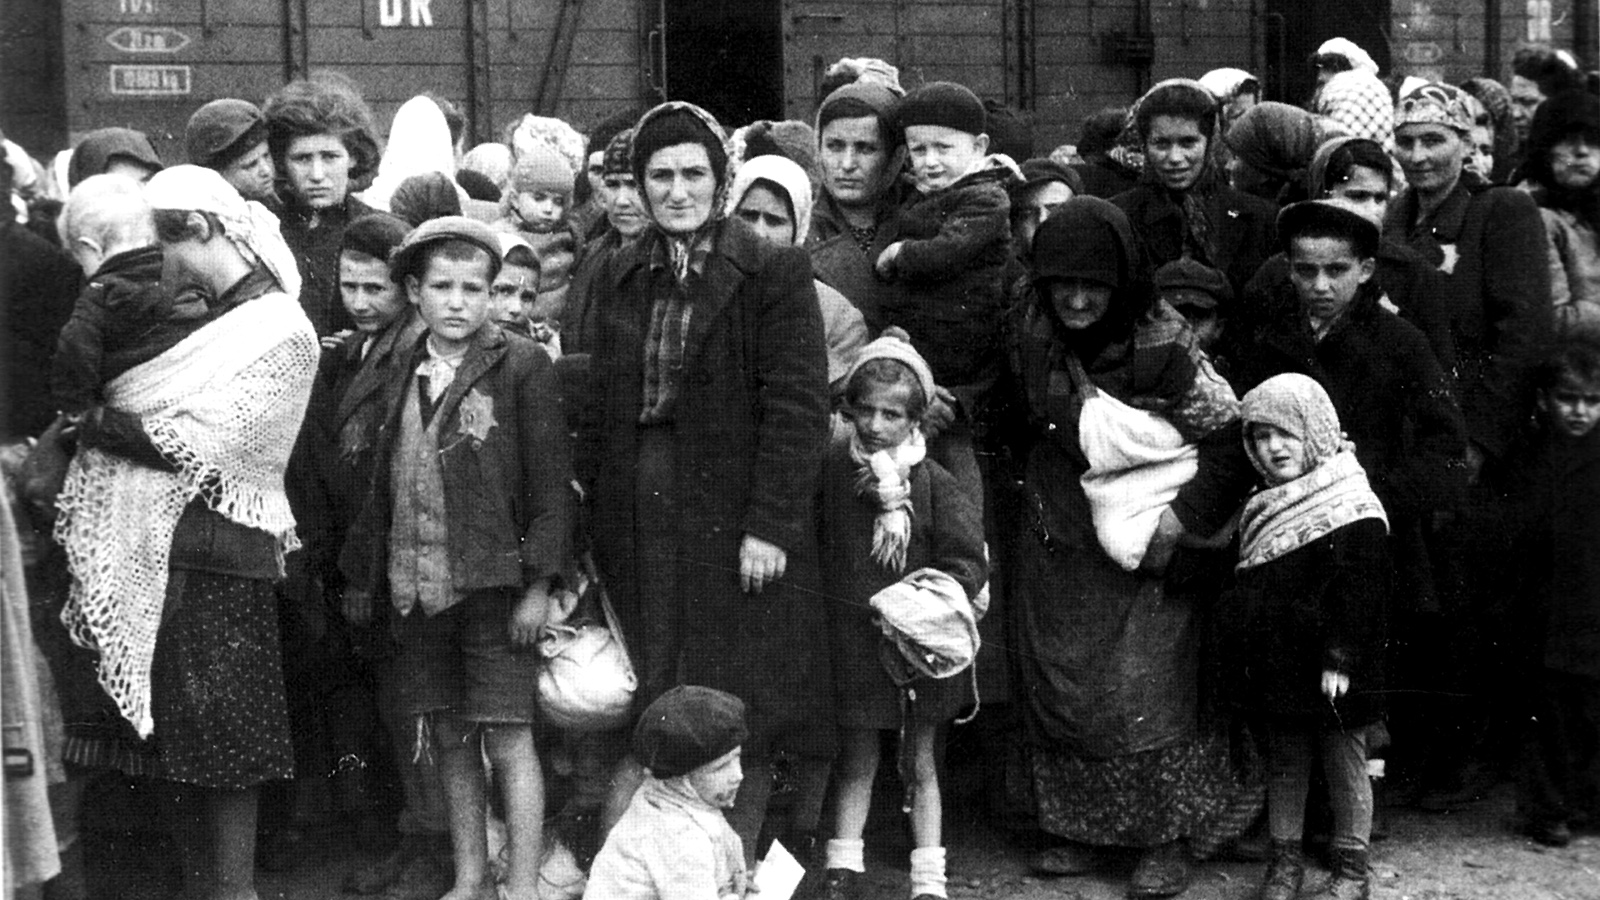 יהודים מהונגריה לאחר ההגעה לאושוויץ 1944 (צילום: Ernst Hofmann or Bernhard Walte/ wikimedia).